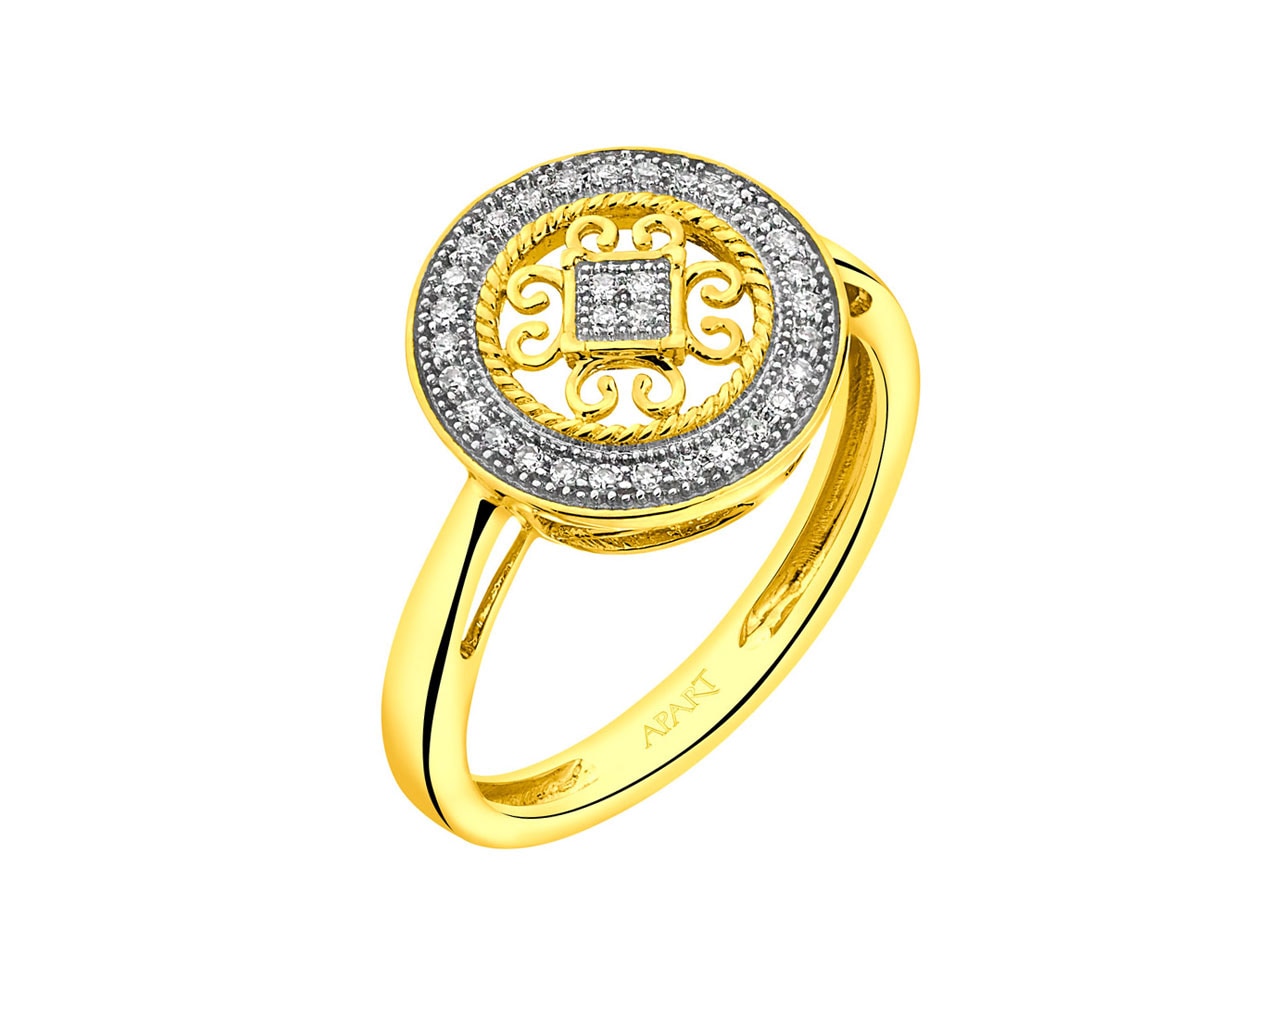 Pierścionek z żółtego złota z diamentami - rozeta 0,09 ct - próba 585